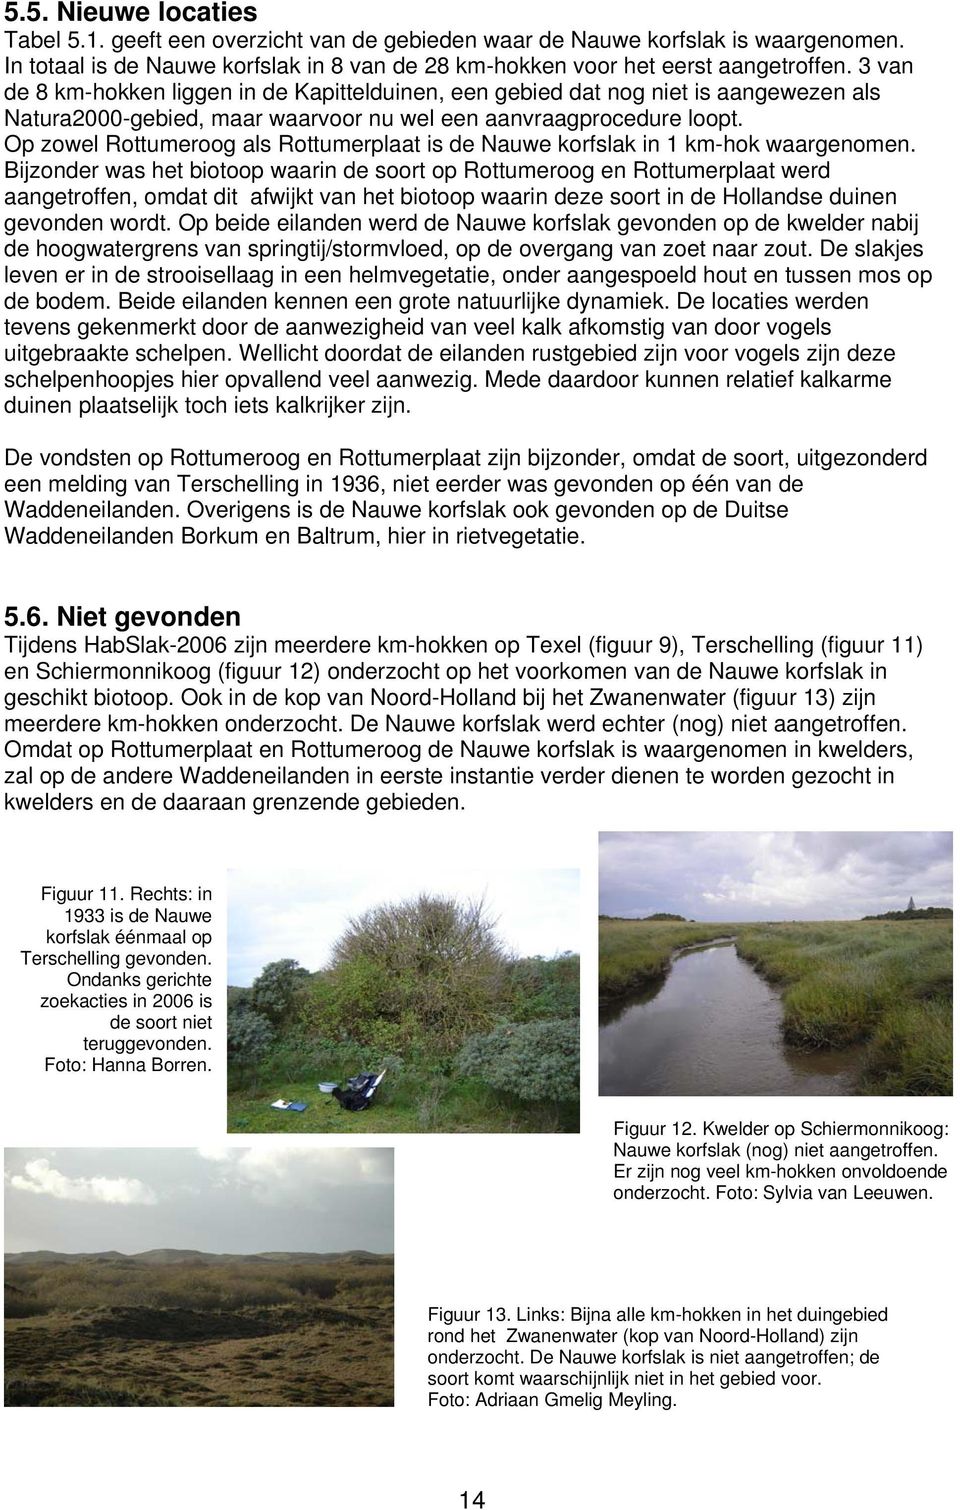 Op zowel Rottumeroog als Rottumerplaat is de Nauwe korfslak in 1 km-hok waargenomen.